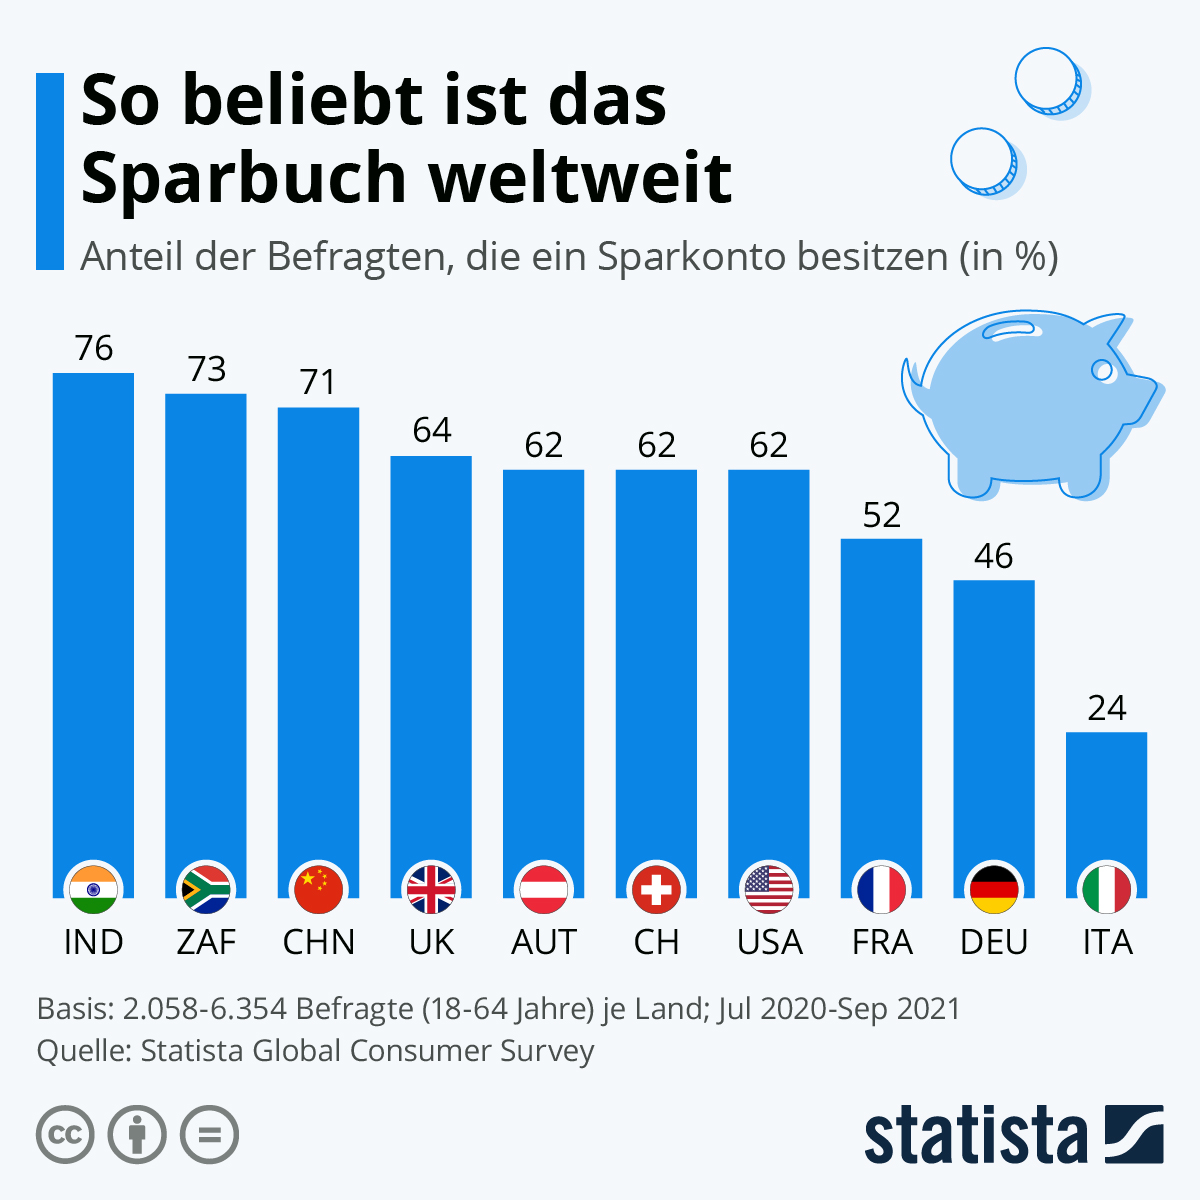 Obwohl den Deutschen gerne eine gewisse Sparsamkeit und guter Umgang mit Geld nachgesagt wird, ist das im internationalen Vergleich ein geringer Wert. In den Alpenrepubliken Schweiz und Österreich waren es beispielsweise jeweils 62 Prozent, die angegeben haben, ein Sparbuch bei der Bank zu besitzen.